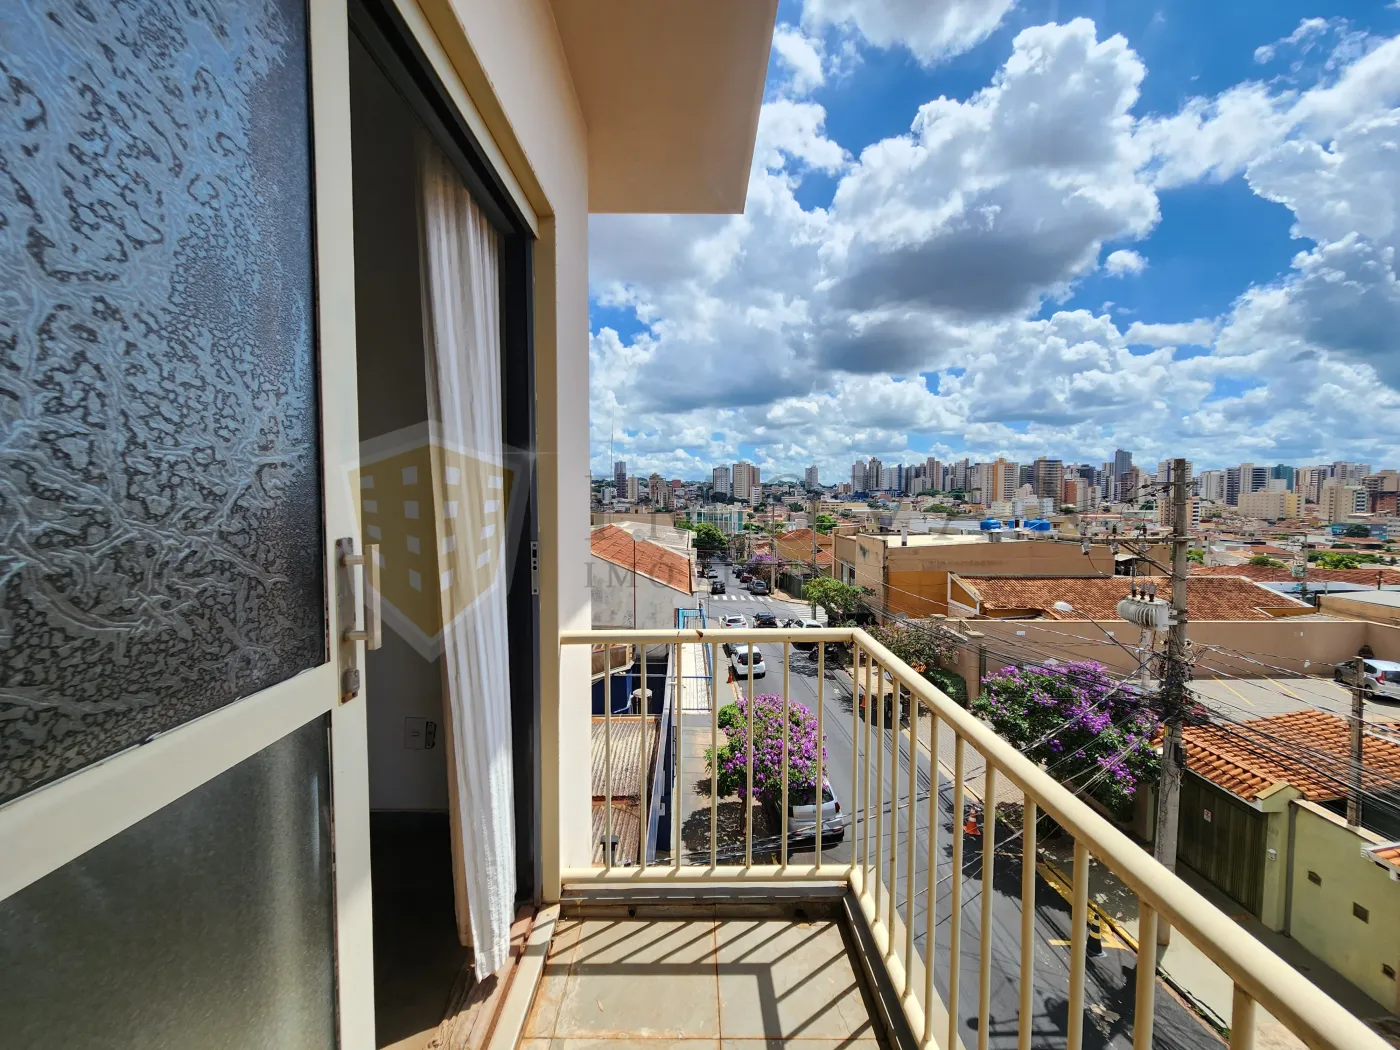 Alugar Apartamento / Padrão em Ribeirão Preto R$ 950,00 - Foto 13